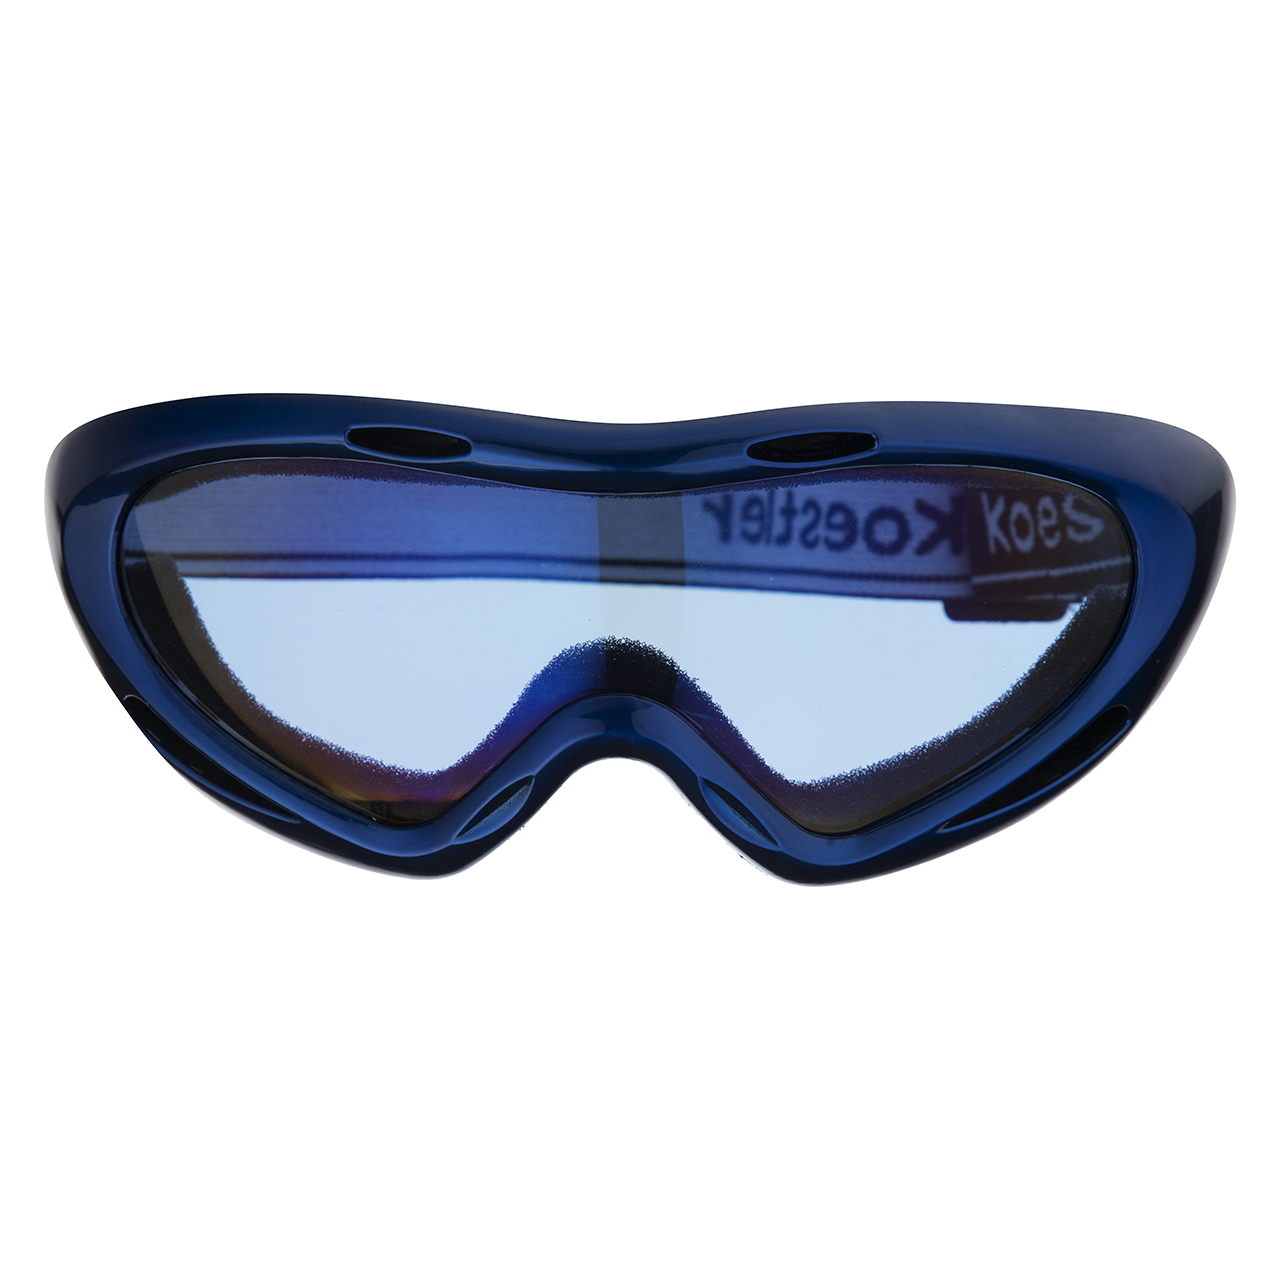 عینک ورزشی کوئستلا مدل 003